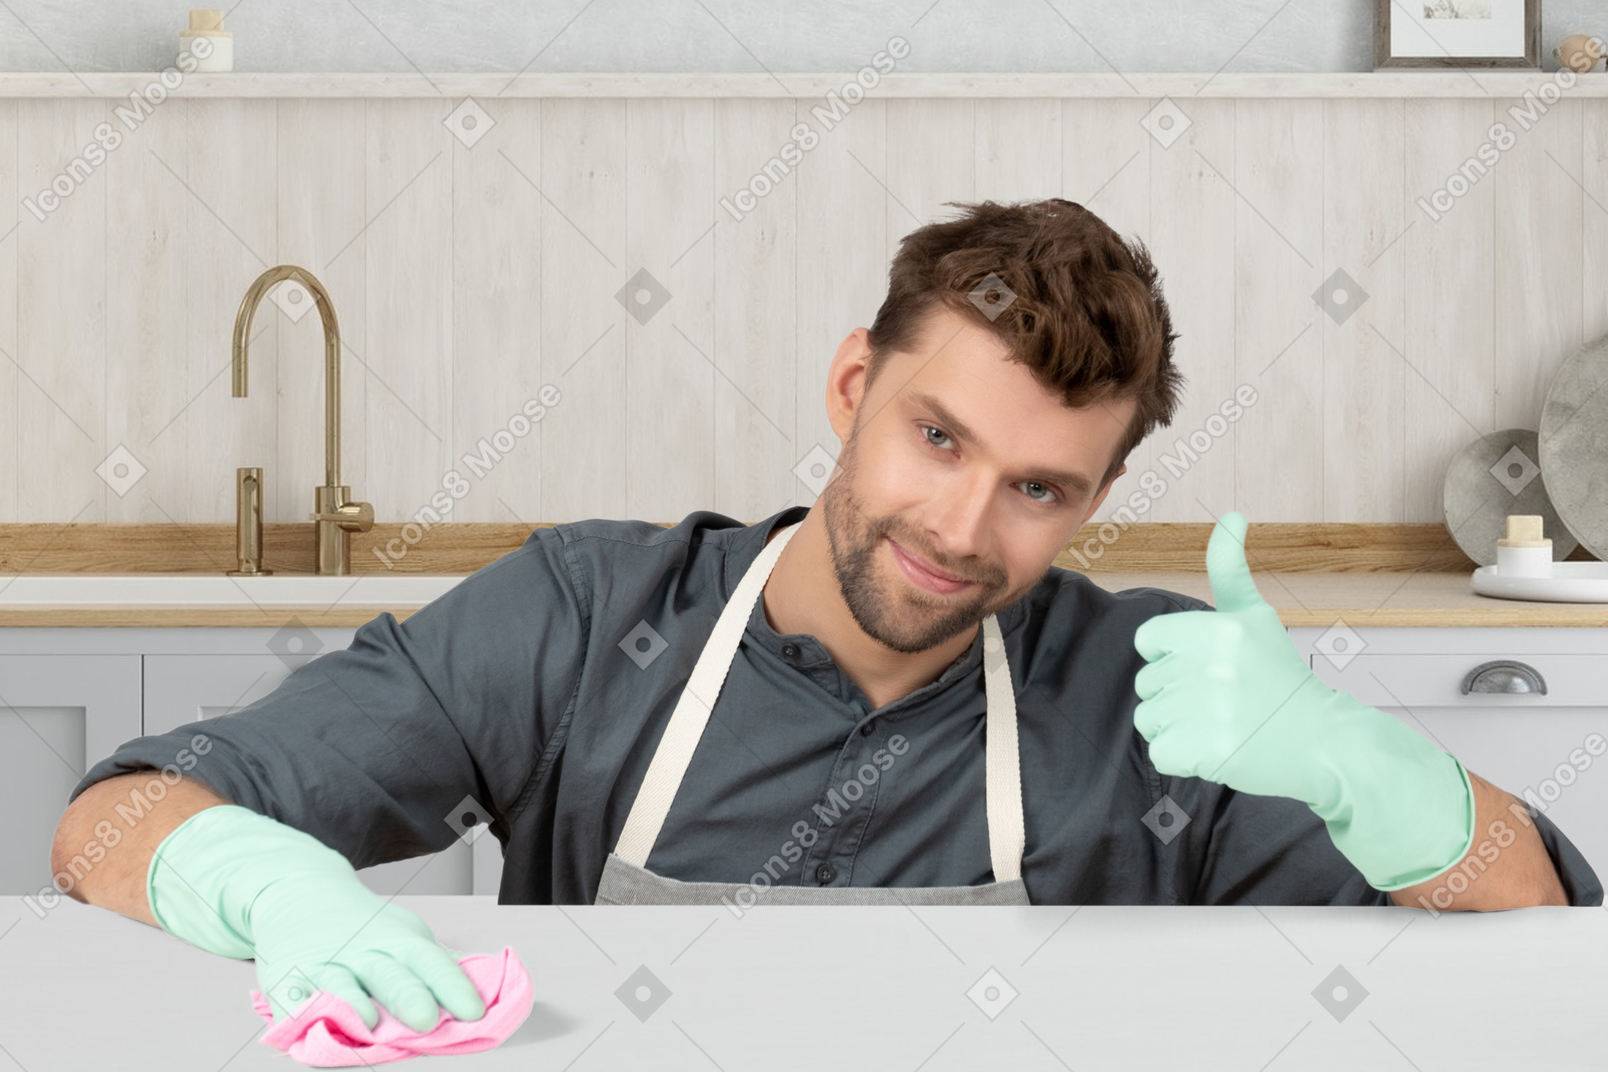 戴橡胶手套打扫厨房的男人